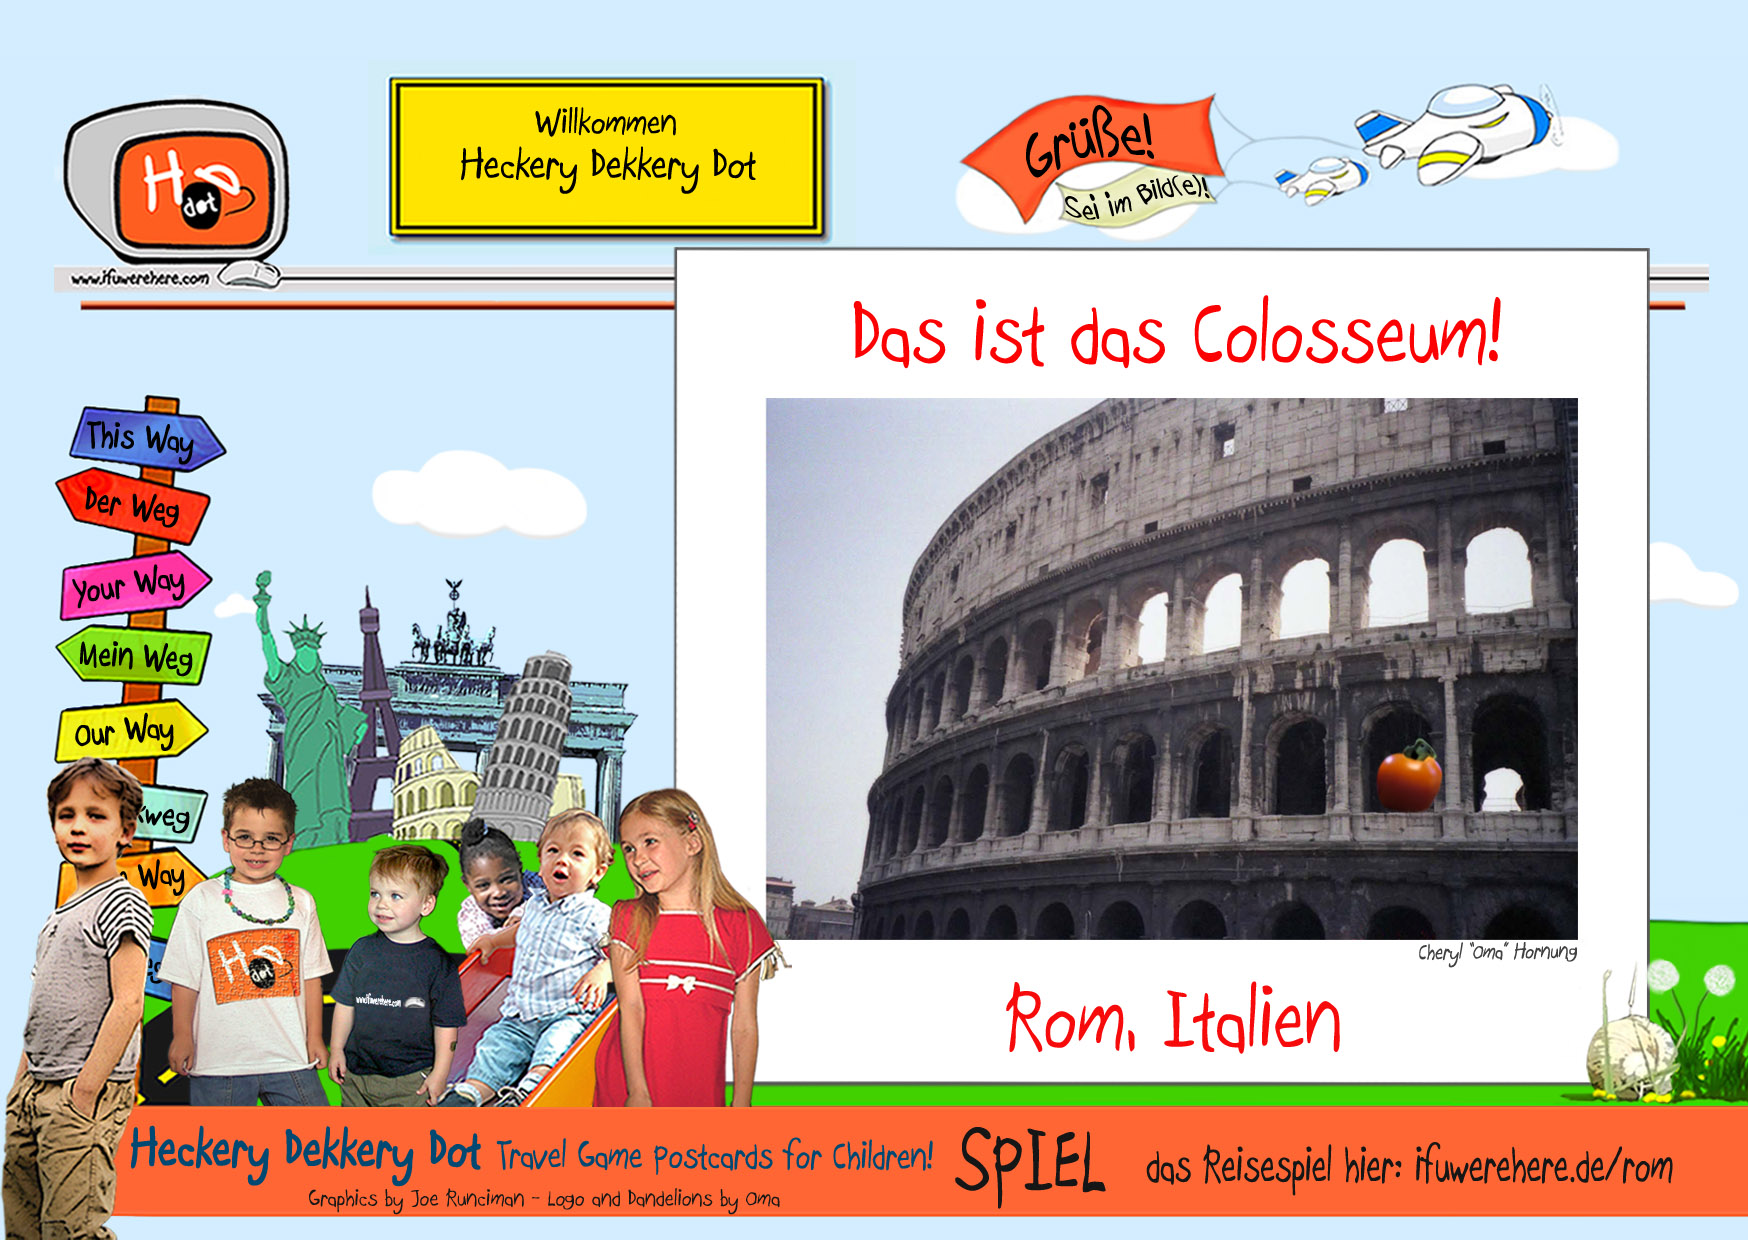 (2) Das Colosseum